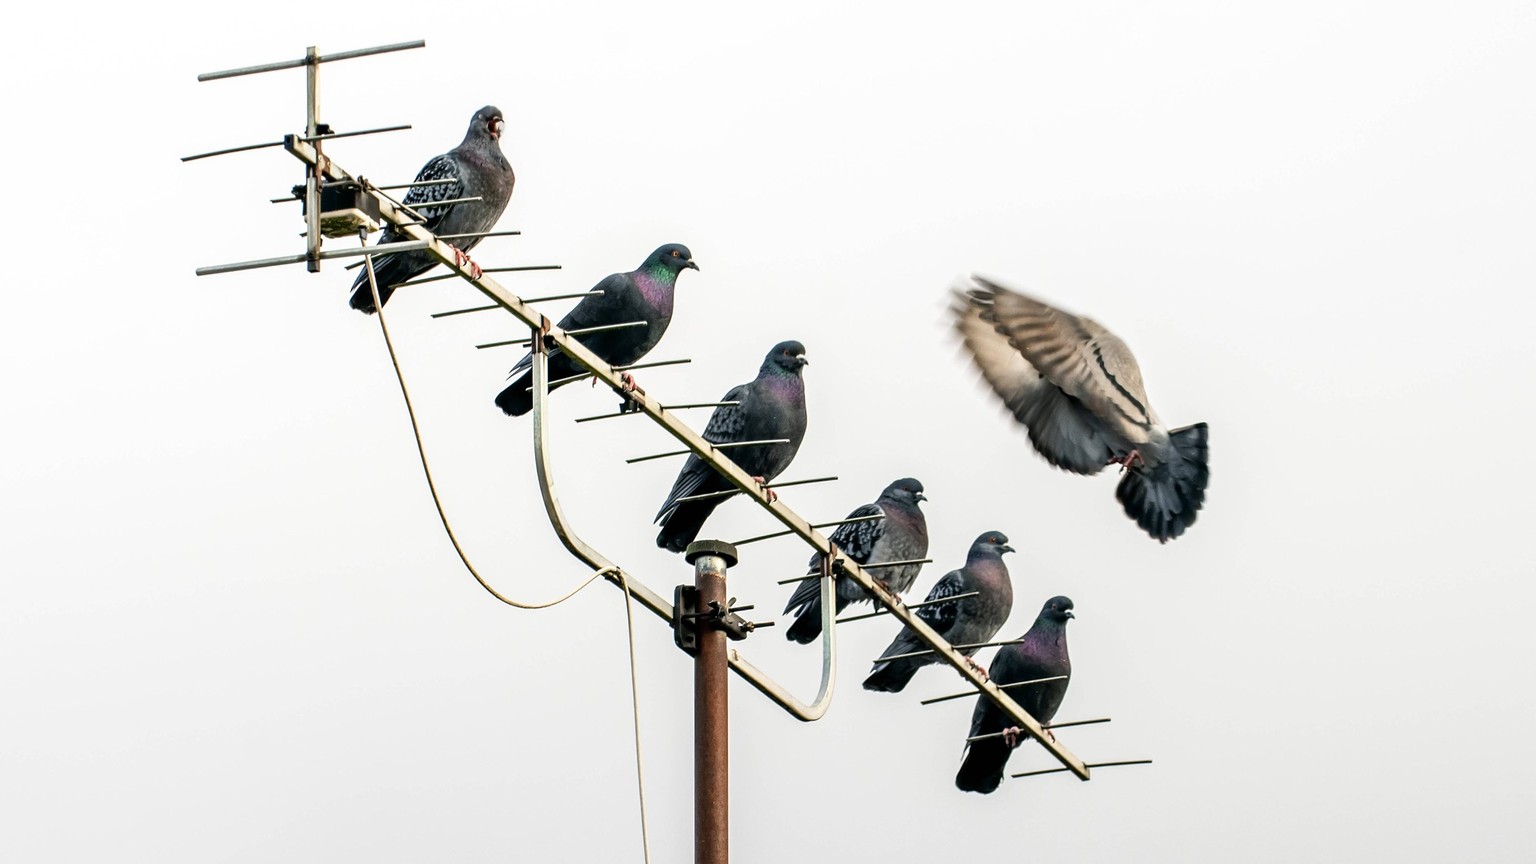 Tauben sitzen auf einer alten Dachantenne, München, 20. Januar 2023 Deutschland, München, 20.01.2023, Tauben sitzen auf einer alten Fernsehantenne, hoch oben auf dem Hausdach, TV Empfang, terrestrisch ...